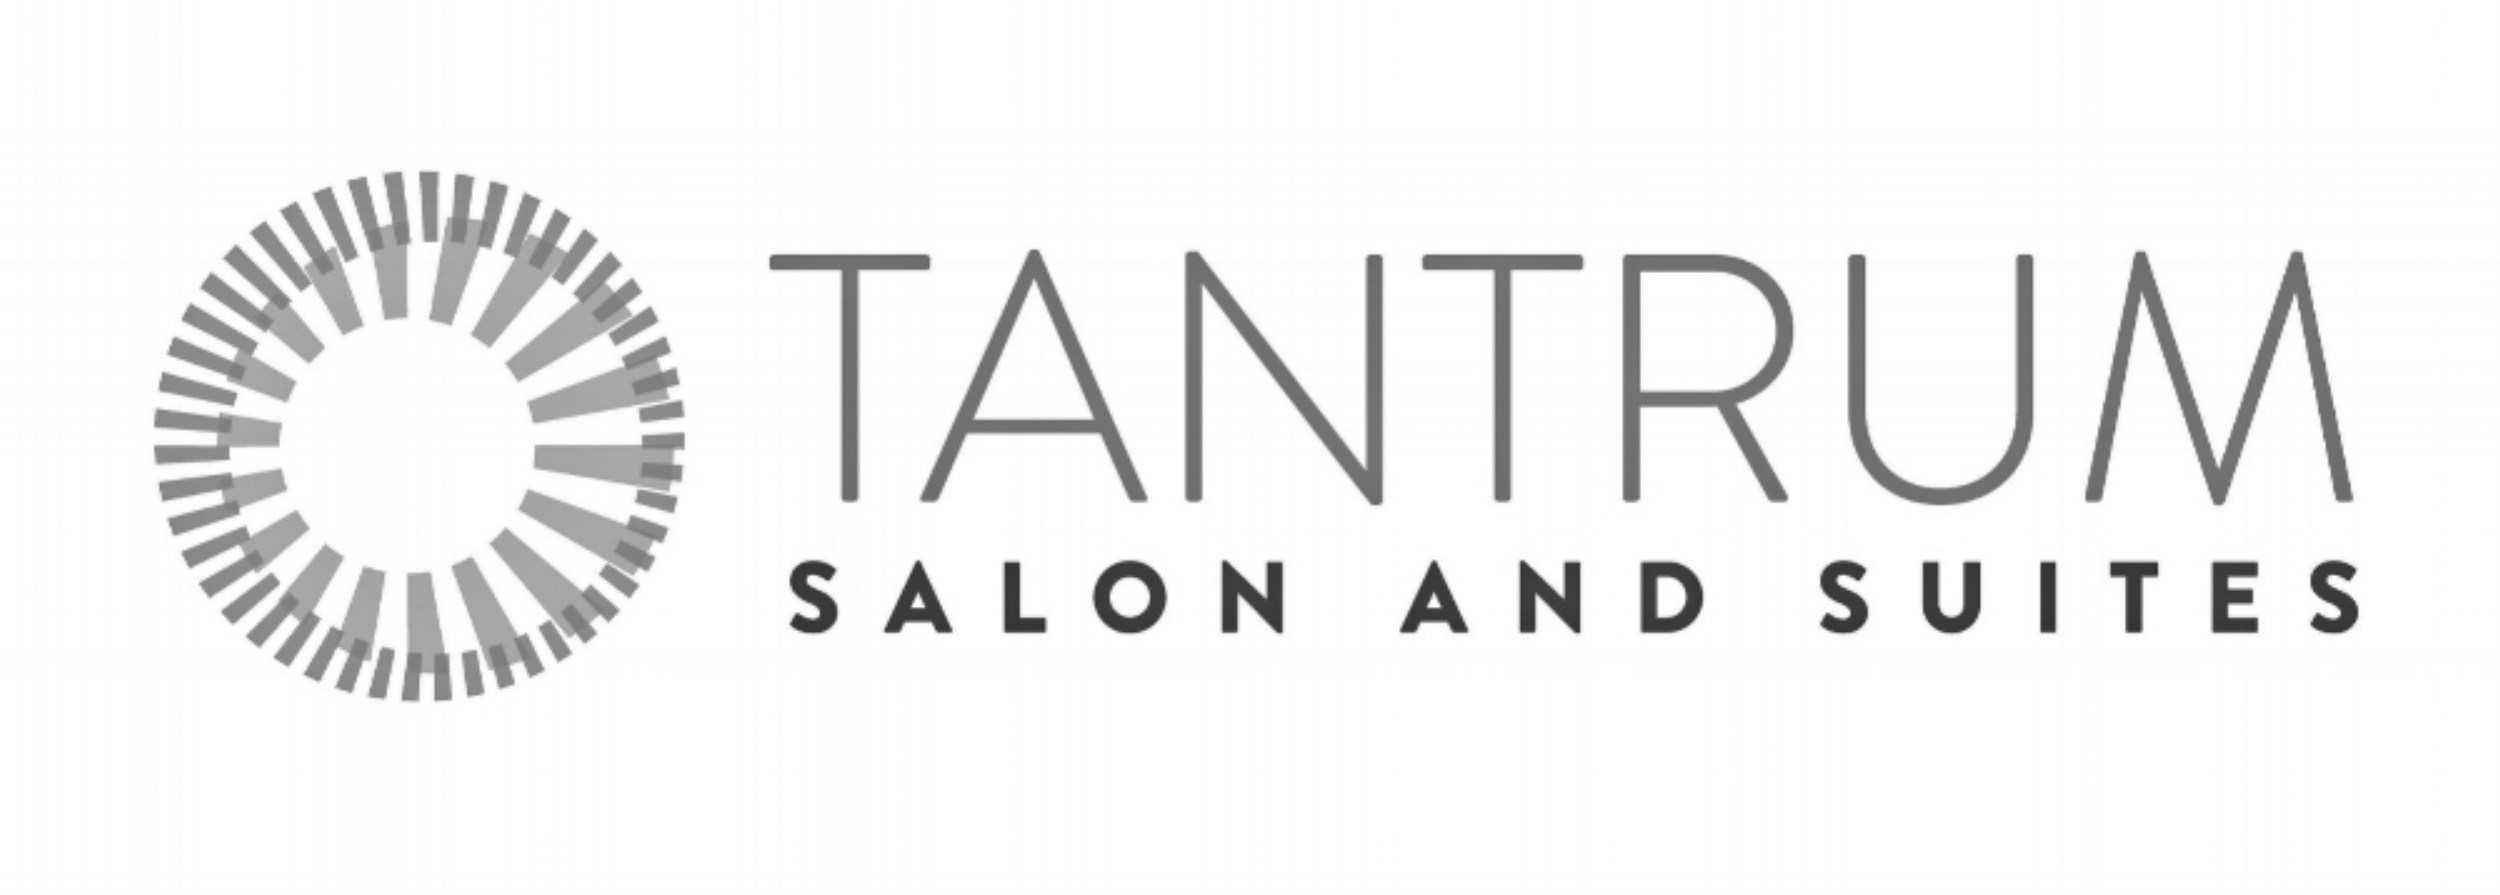 Tantrum Salon and Suites